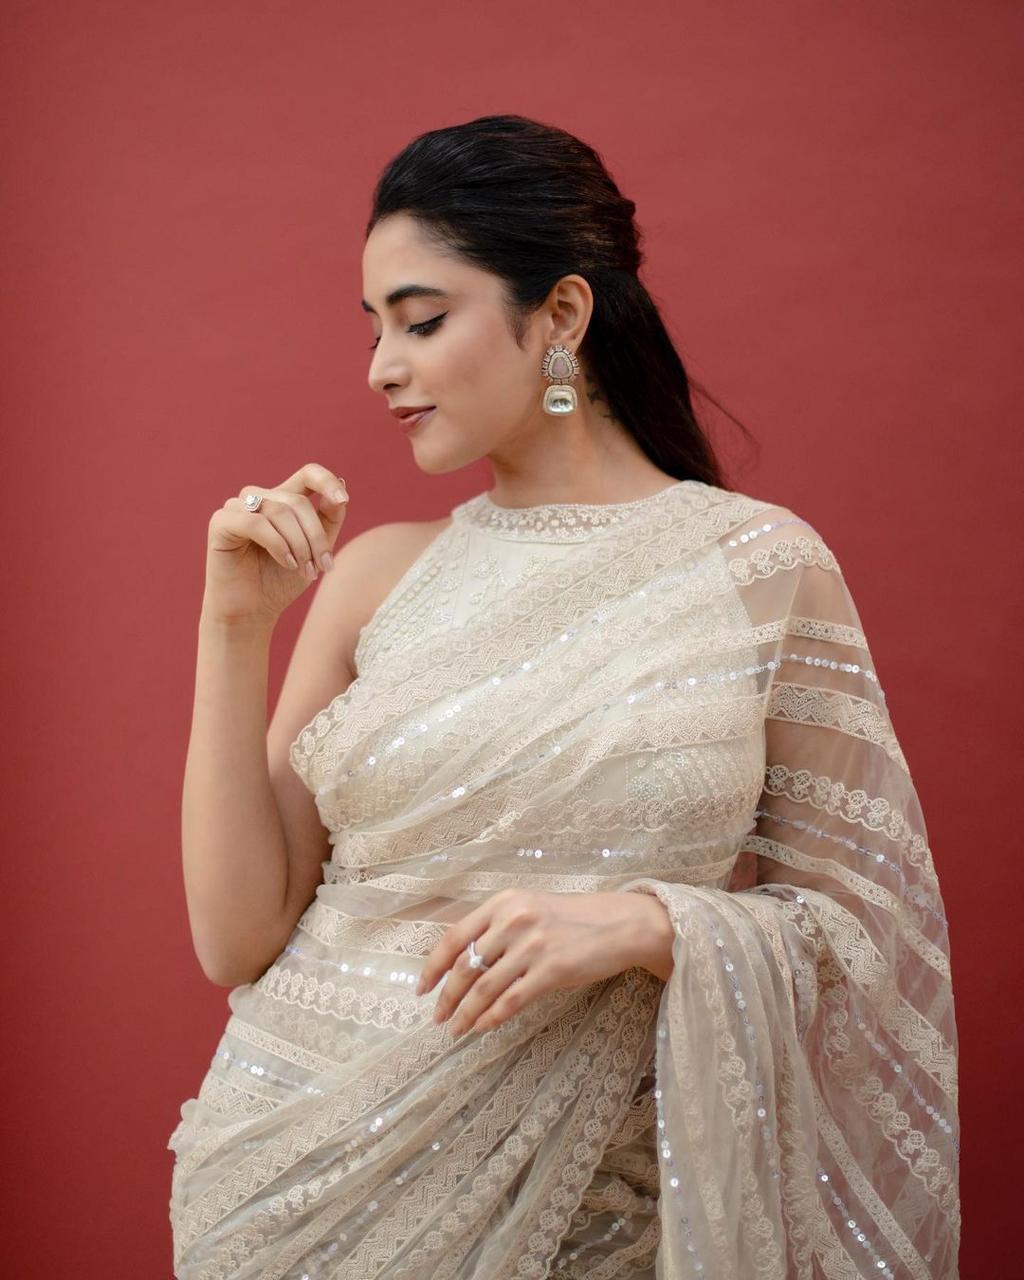 Saree Sari Bollywood Indian Wedding Party Wear Sari Blouse Bridal Designer saree and Fancy saree and Beautiful saree blouse